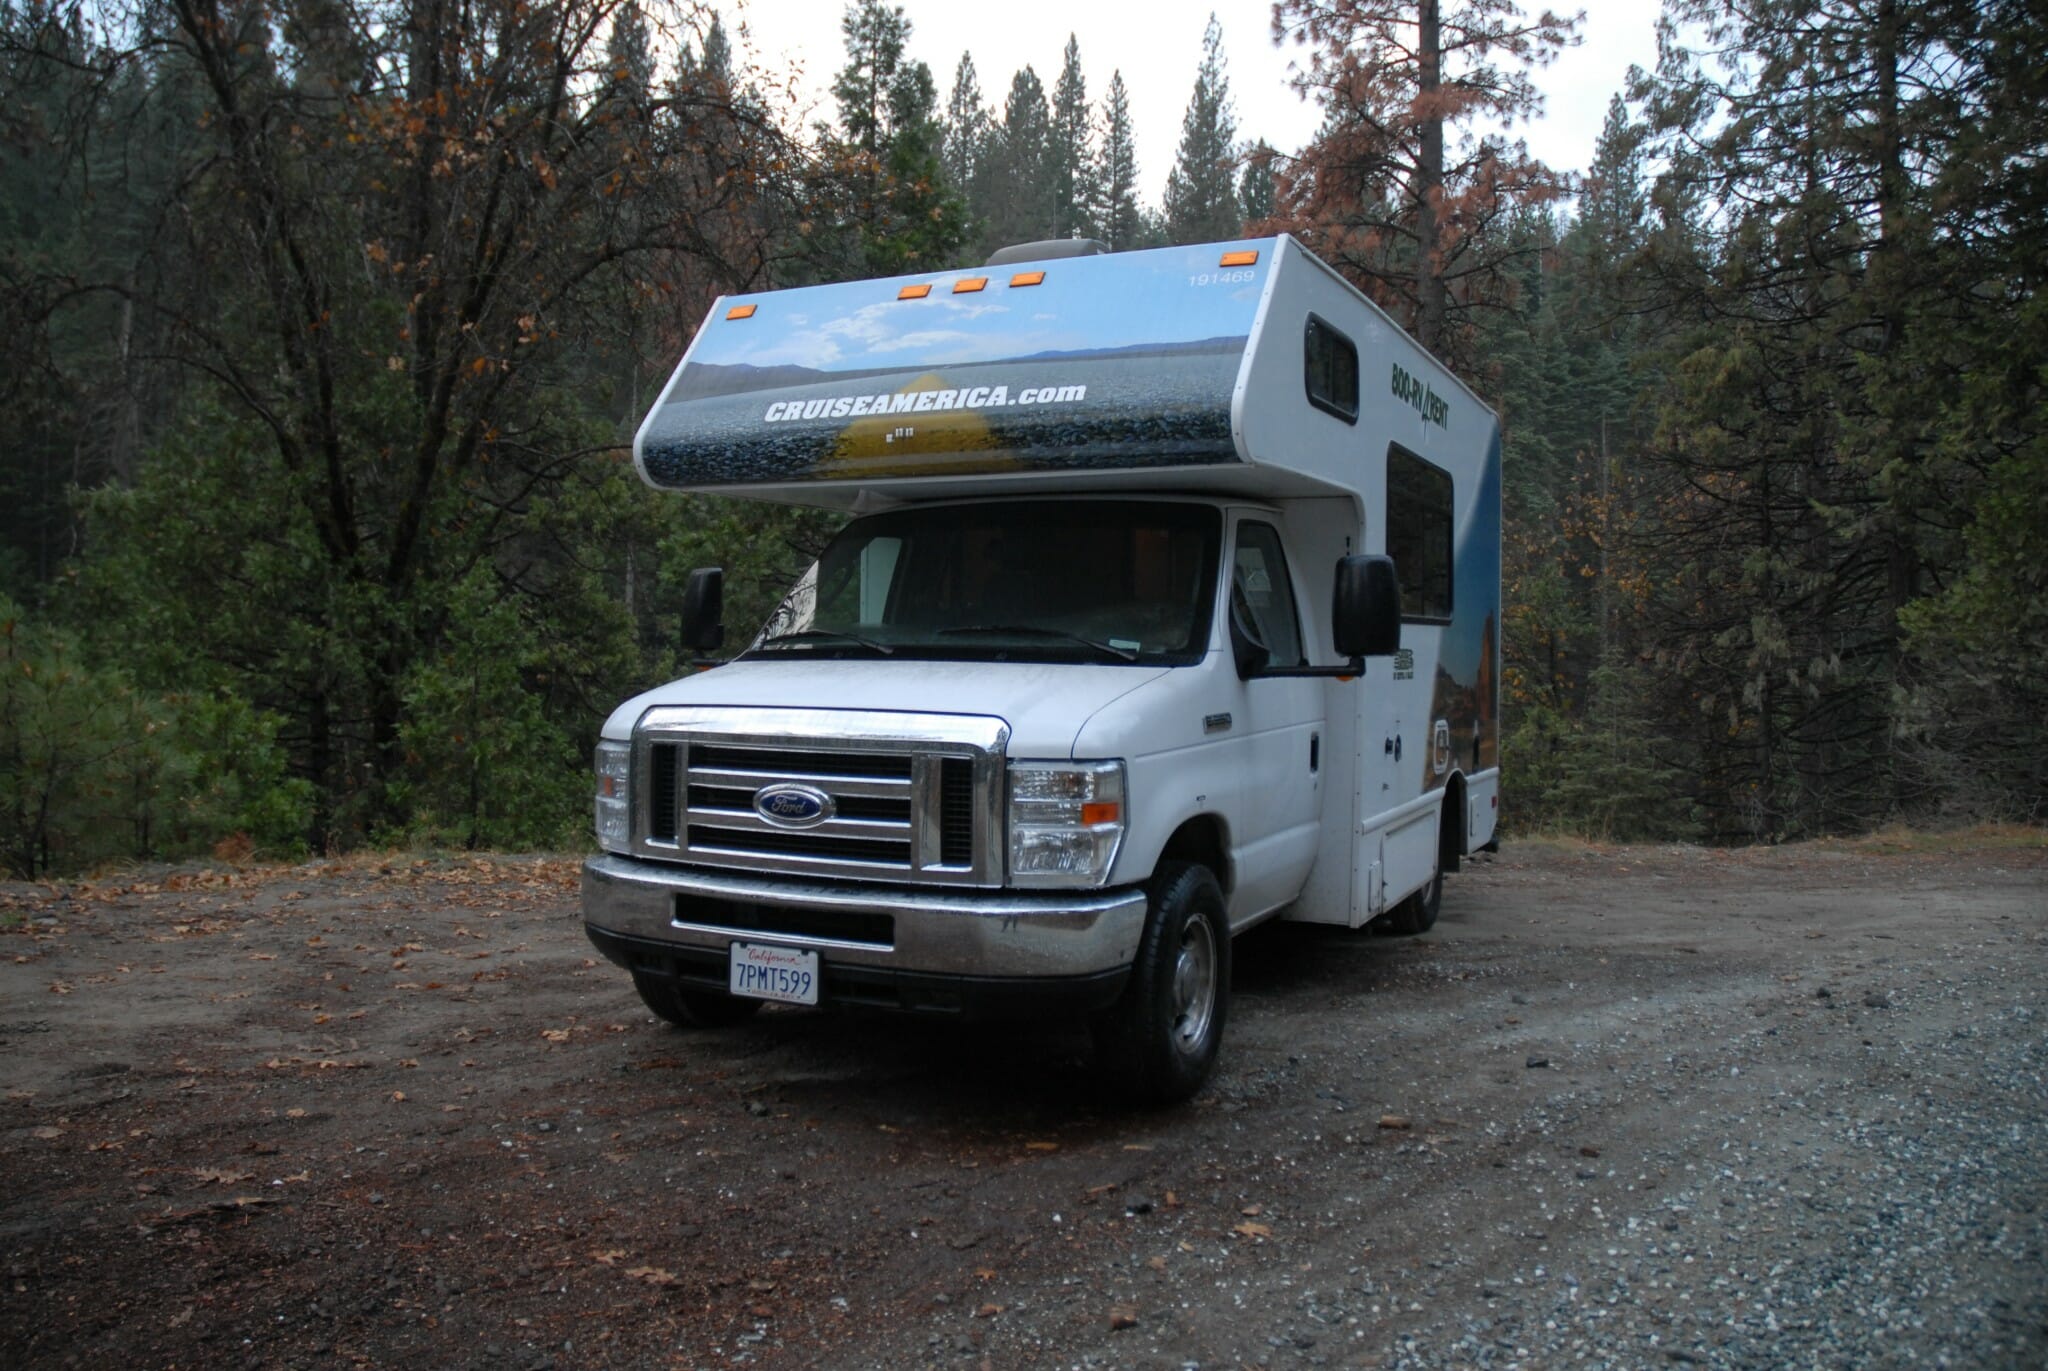 Dorte fra Autocampers.dk nyder en gratis overnatning i en national skov tæt ved Yosemite